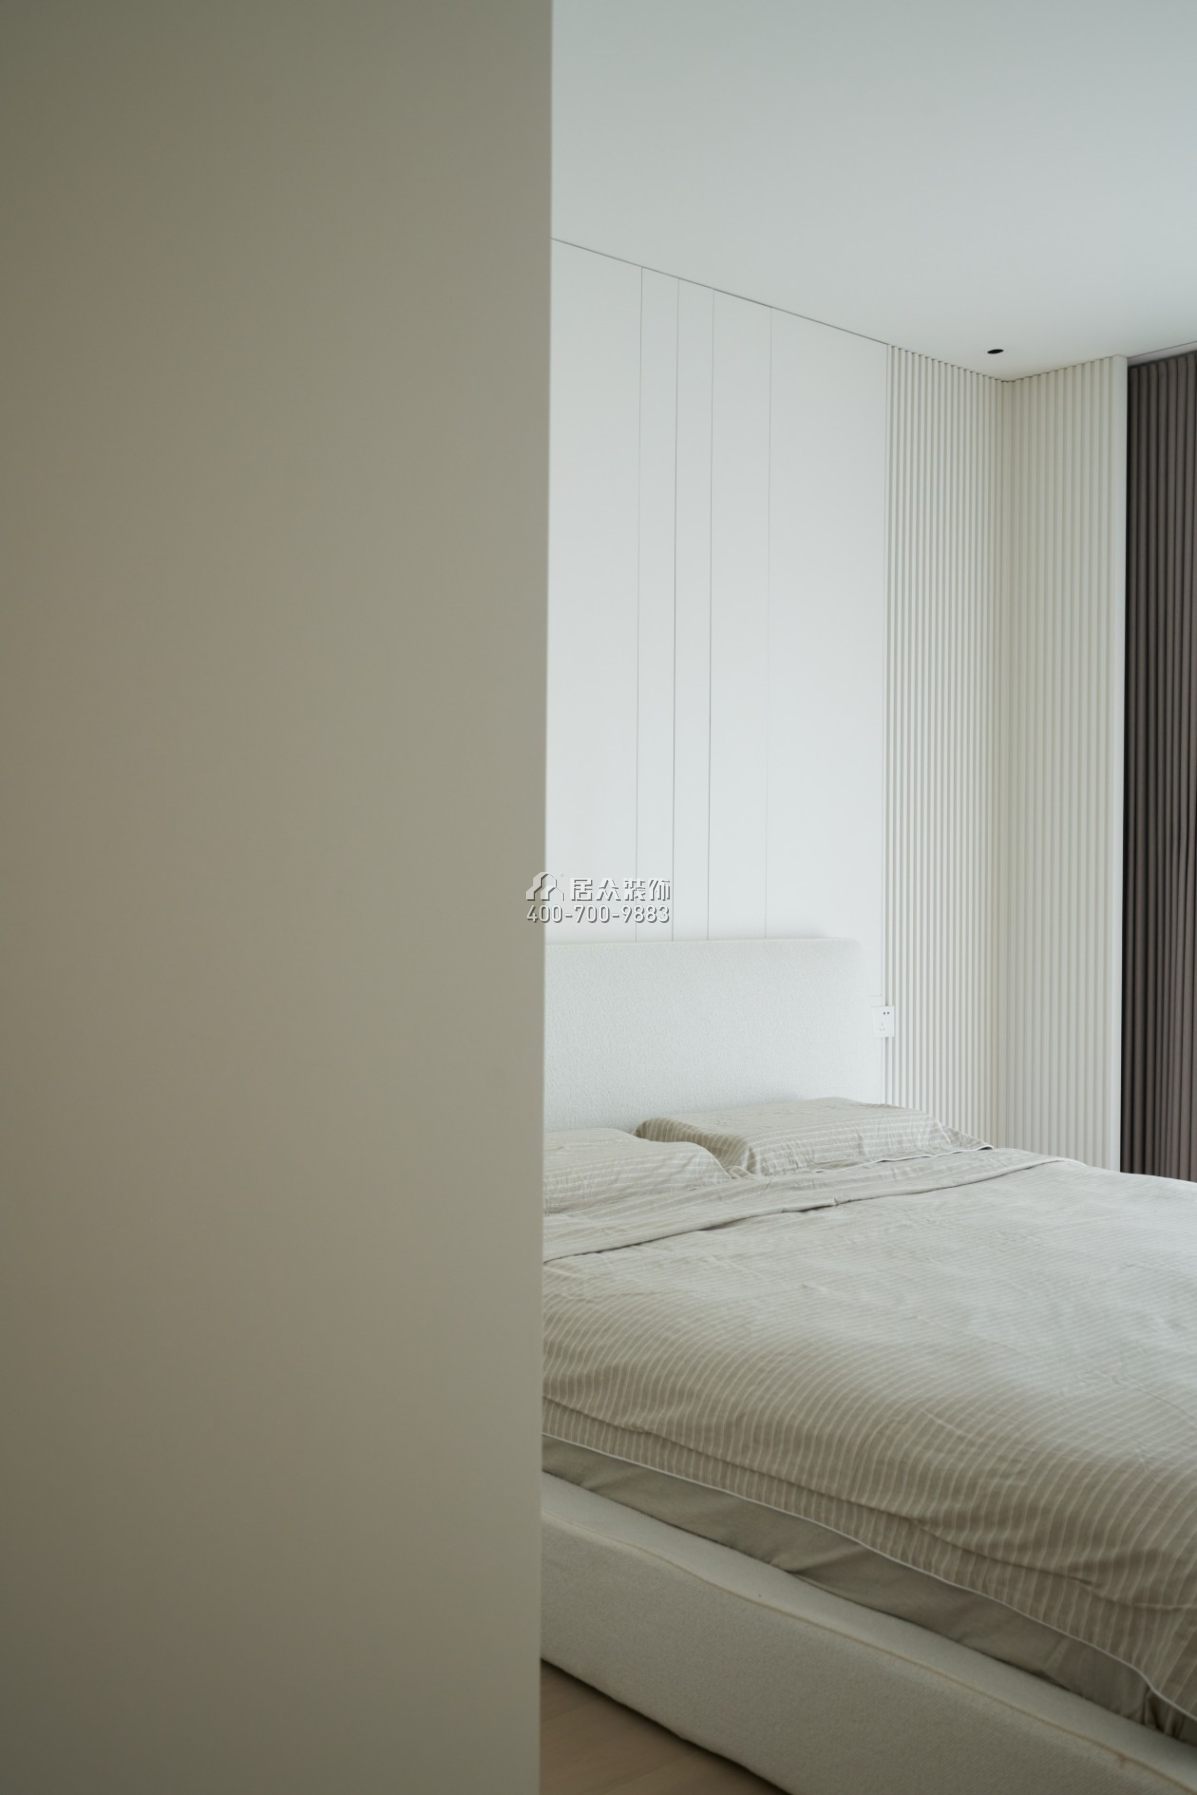 黃埔雅苑一期120平方米現代簡約風格平層戶型臥室裝修效果圖